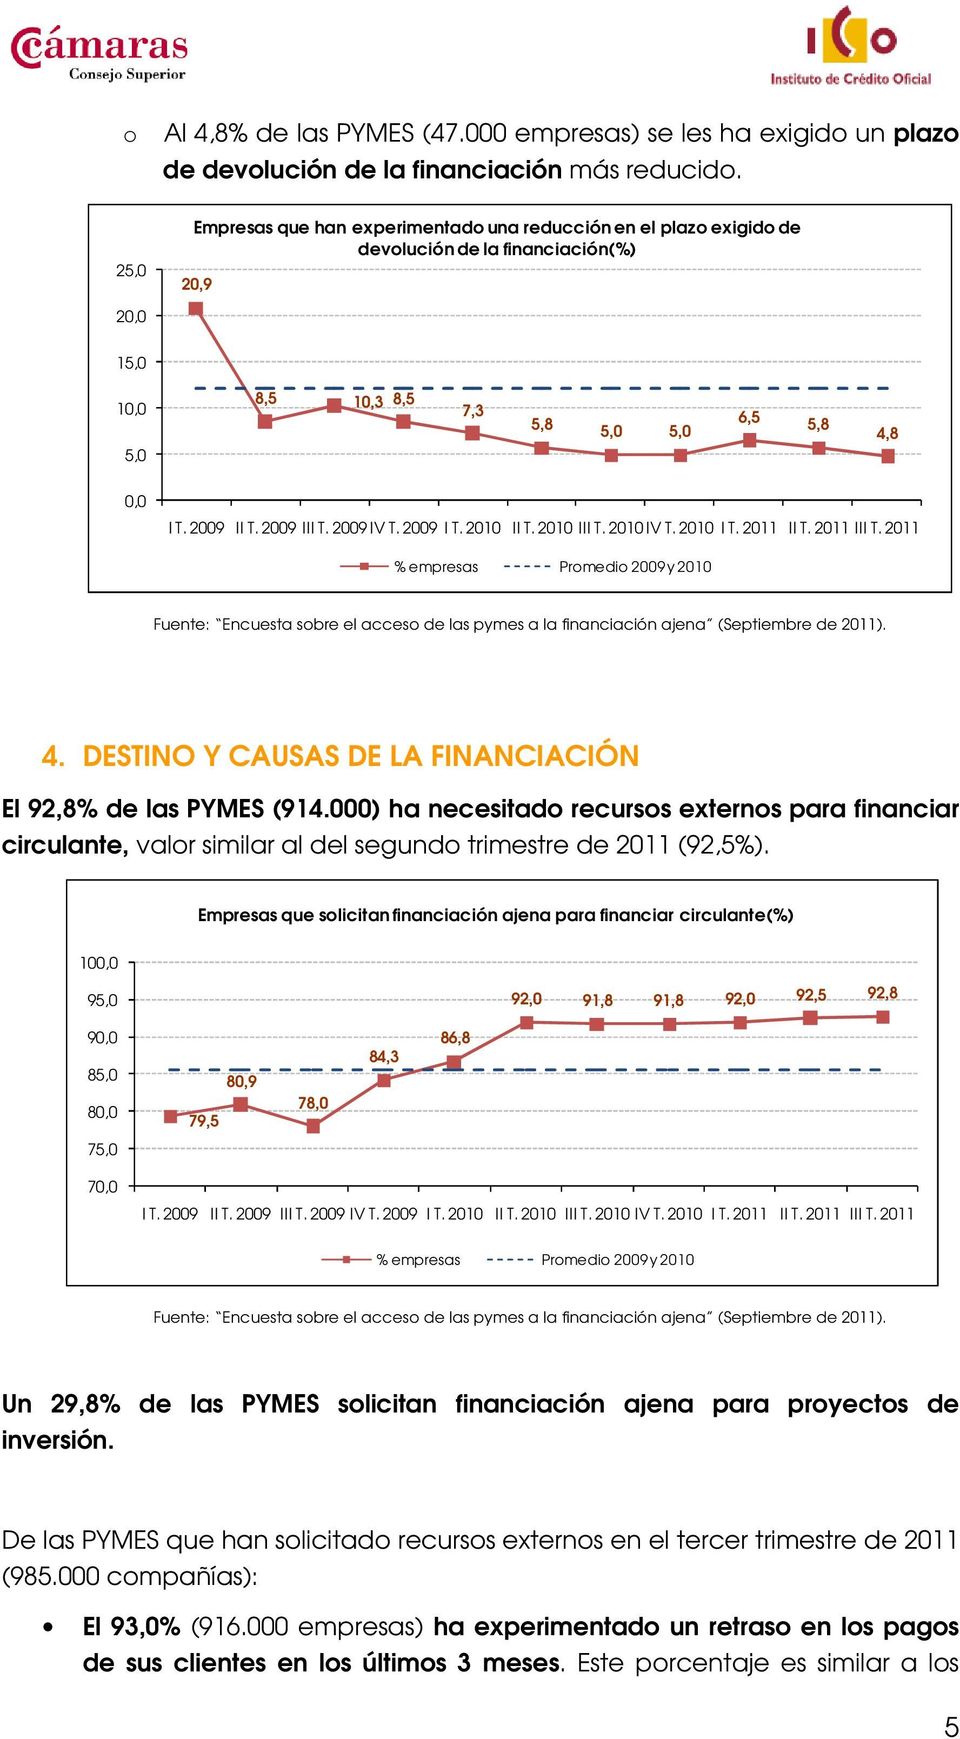 DESTINO Y CAUSAS DE LA FINANCIACIÓN El 92,8% de las PYMES (914.000) ha necesitado recursos externos para financiar circulante, valor similar al del segundo trimestre de 2011 (92,5%).